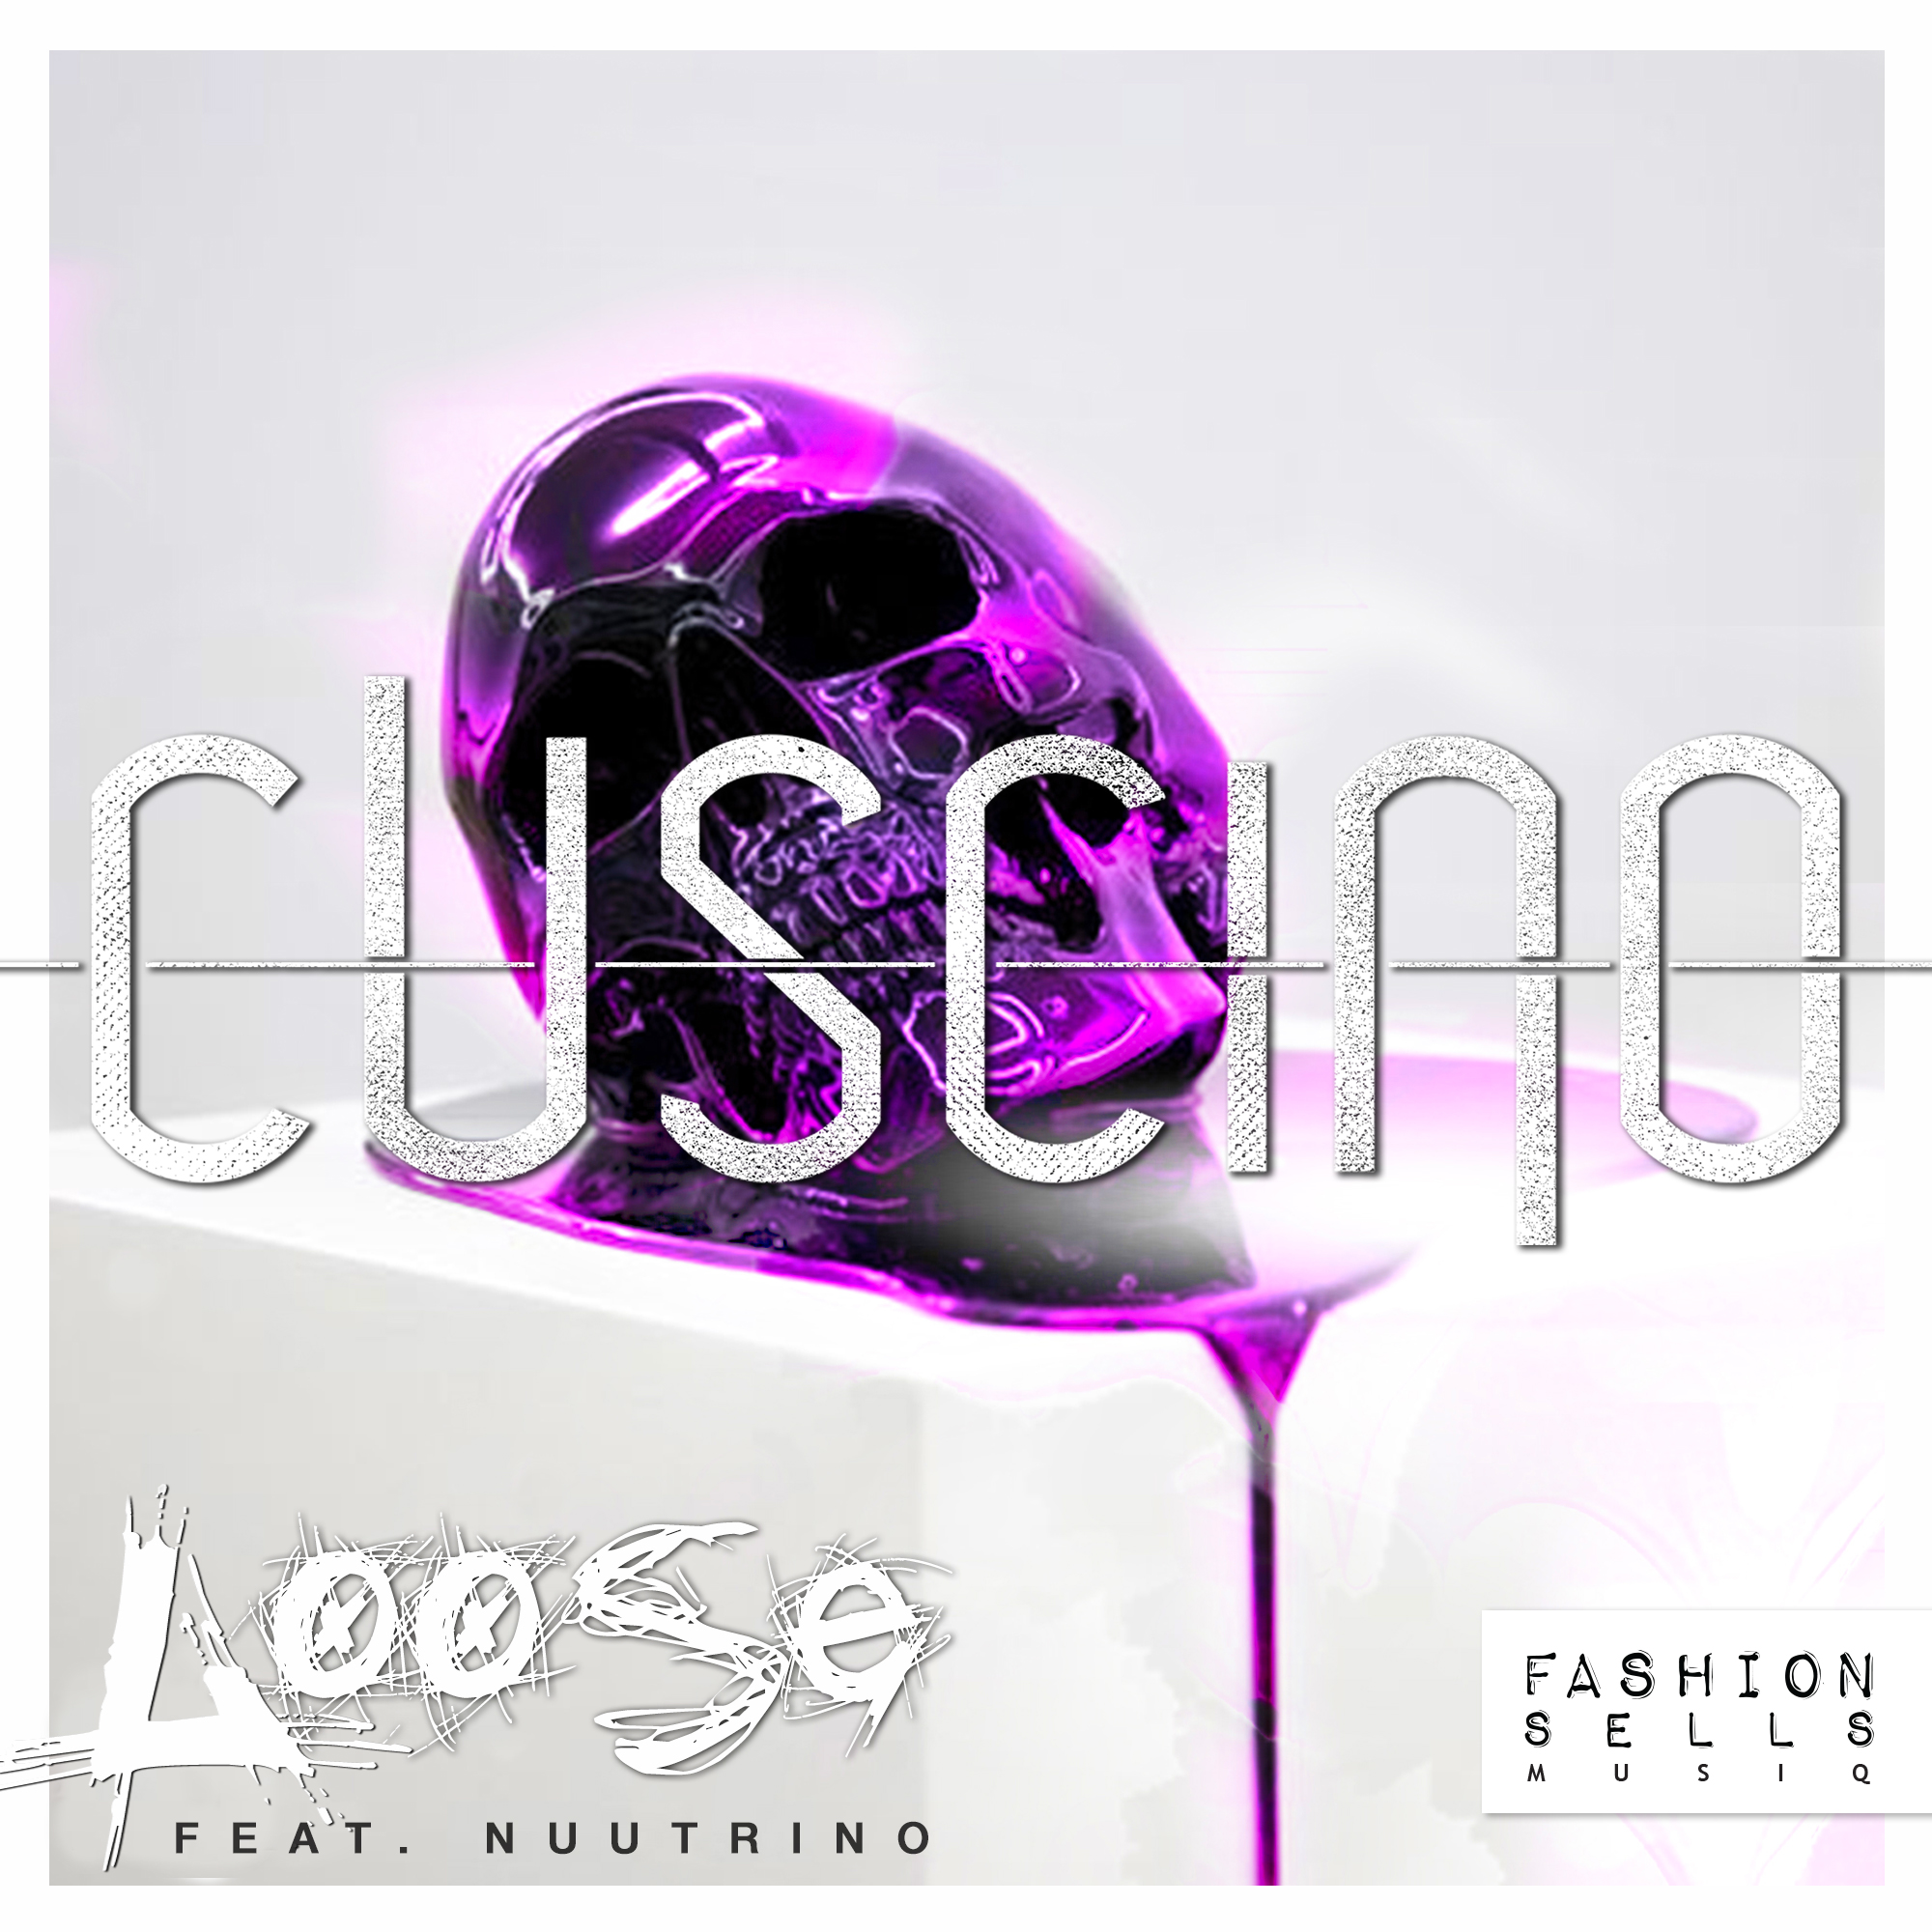 CUSCINO - "Loose" feat. Nuutrino